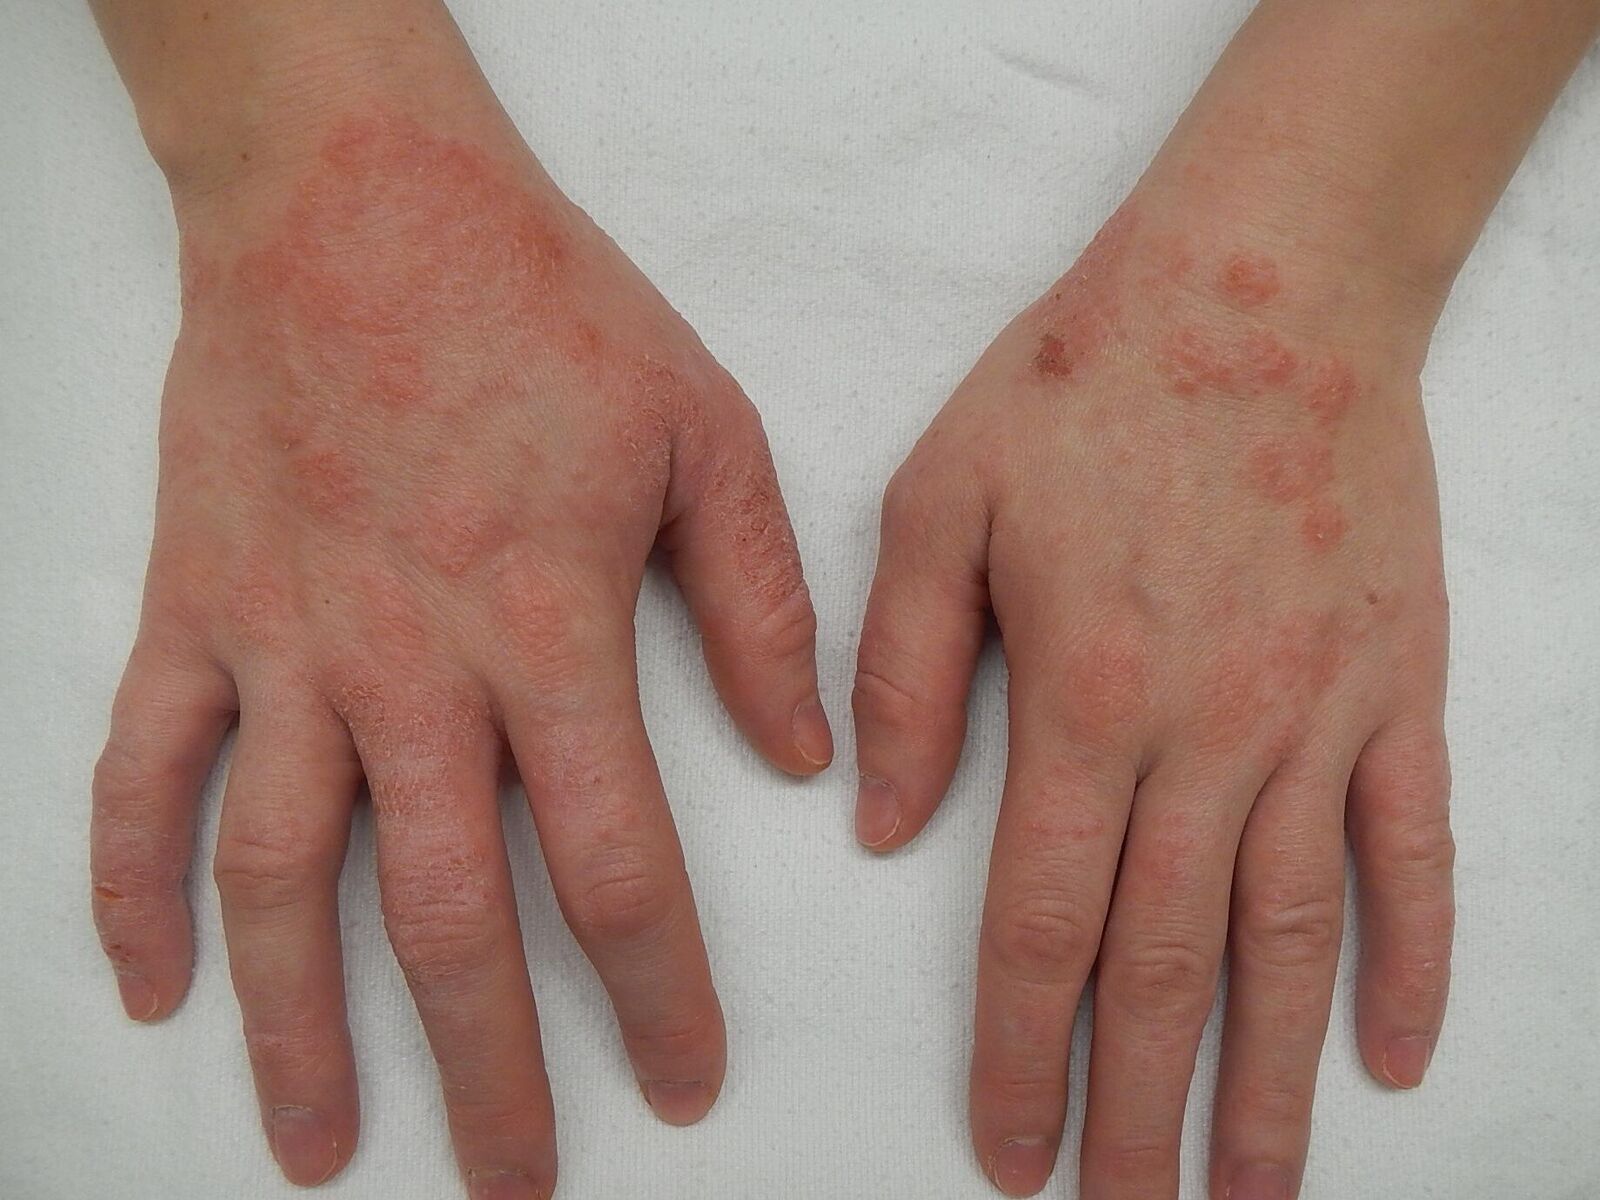 Аллергия у взрослых: симптомы, причины, лечение